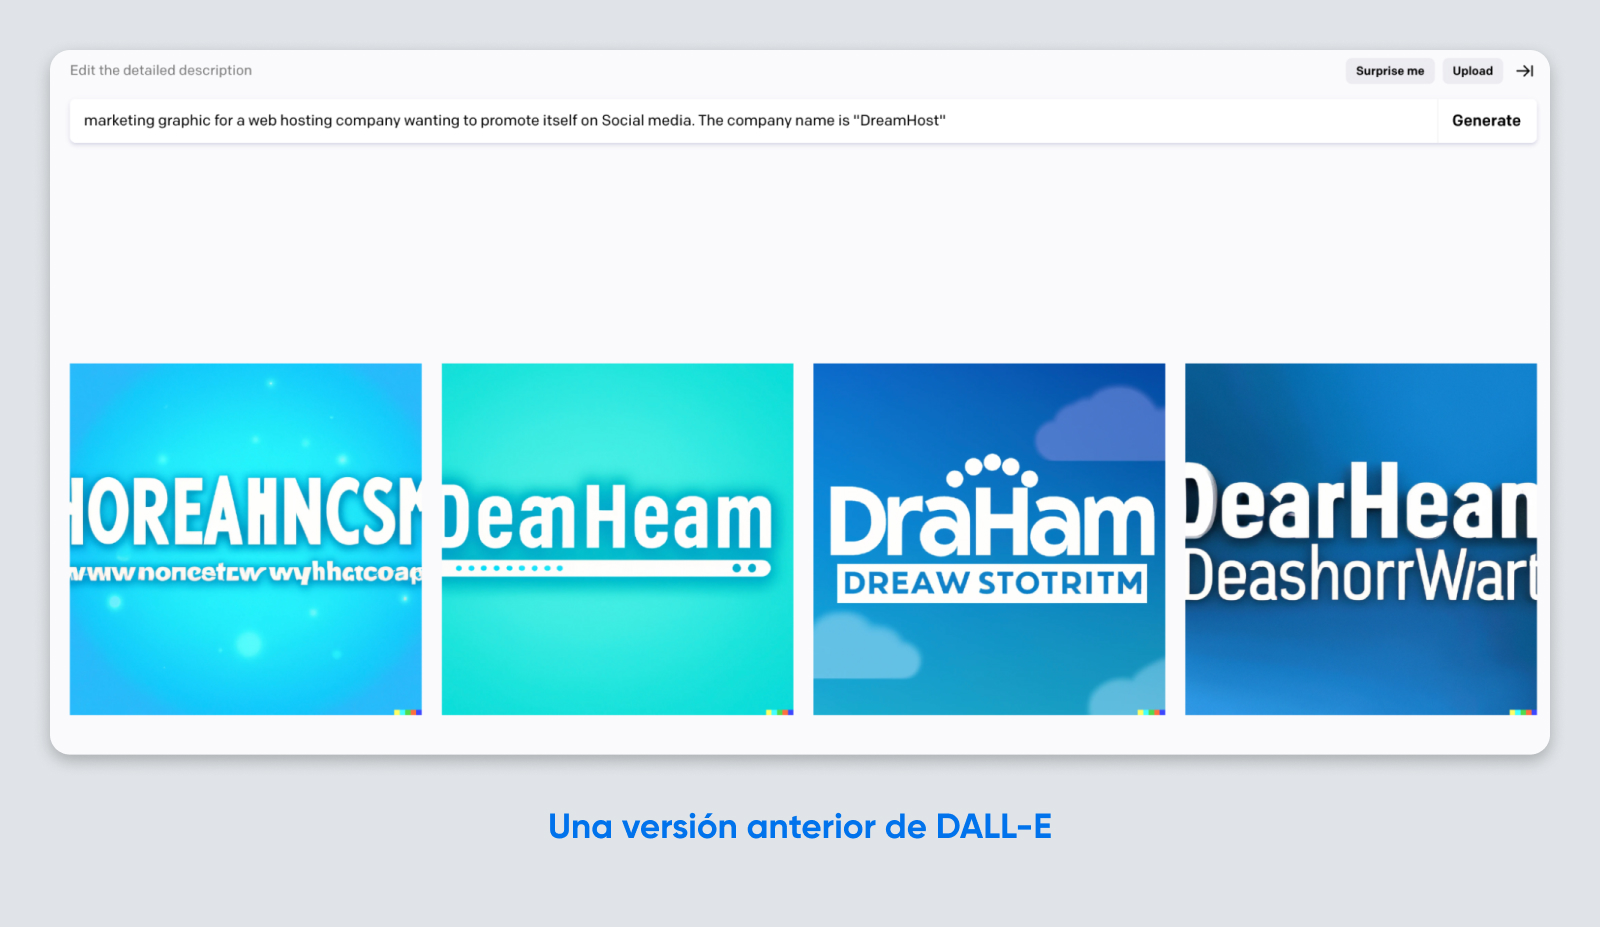 Logo DreamHost creado por una versión anterior de DALL-E